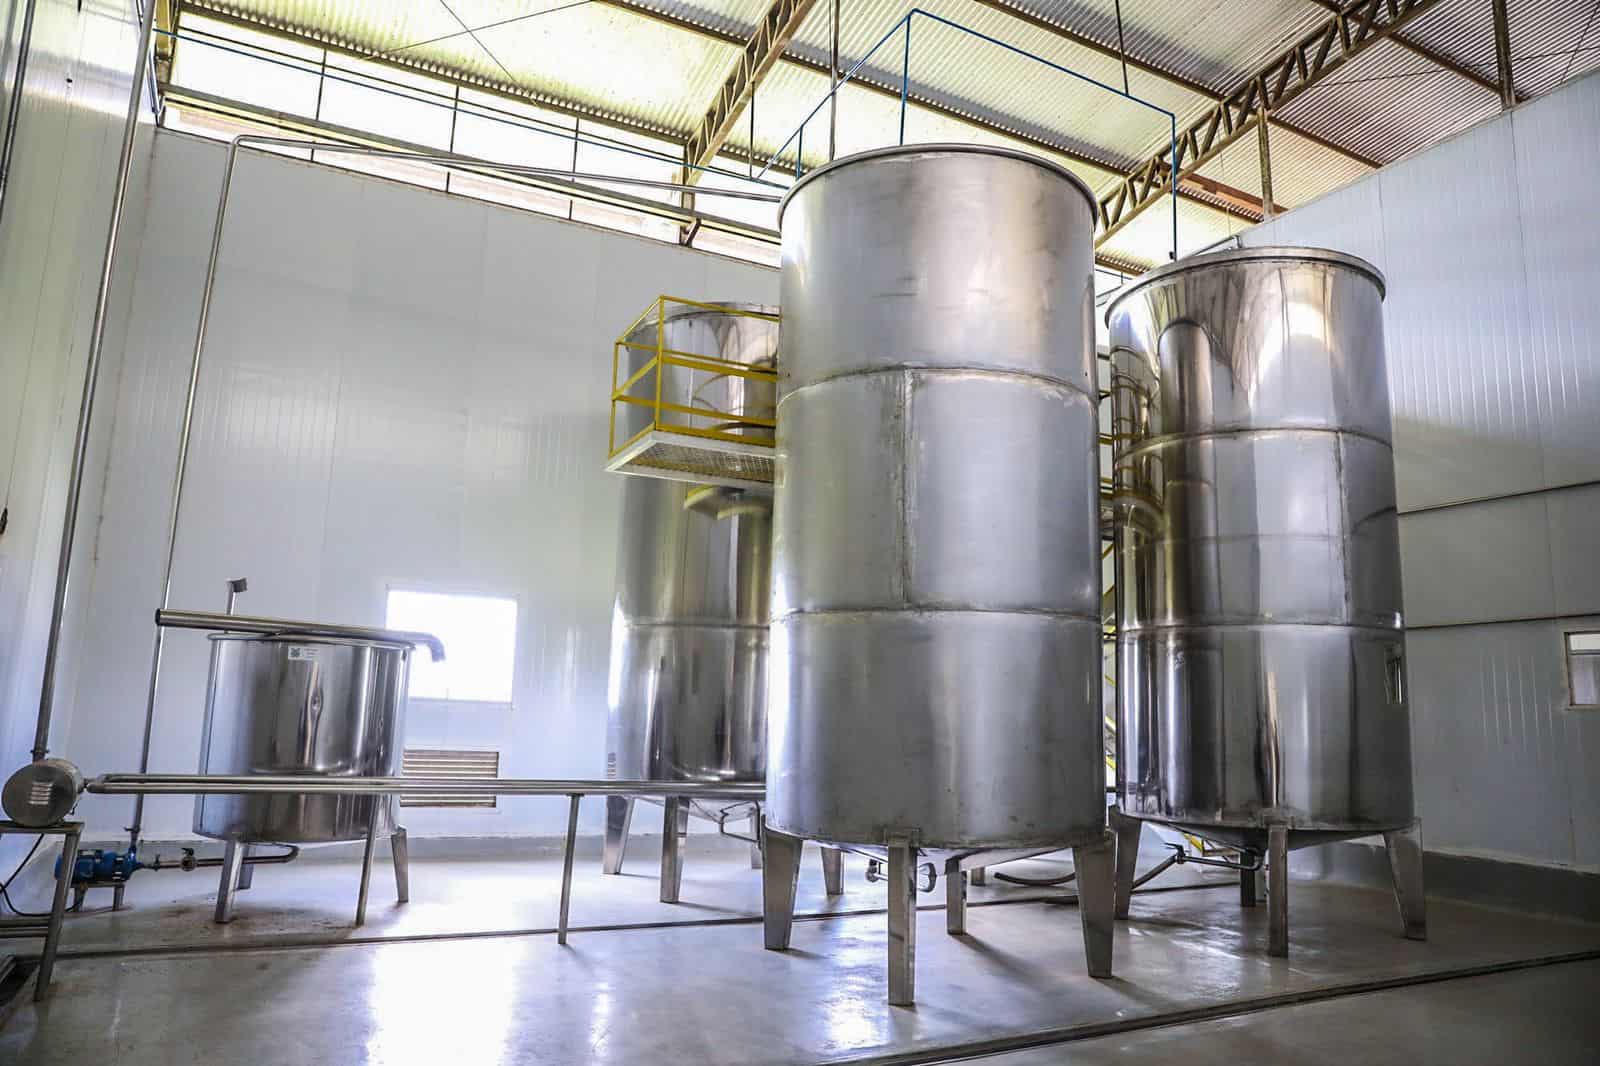 Fábrica possui tanques internos em inox de 5 e 10 mil litros no processo de produção da cachaça Jibóia